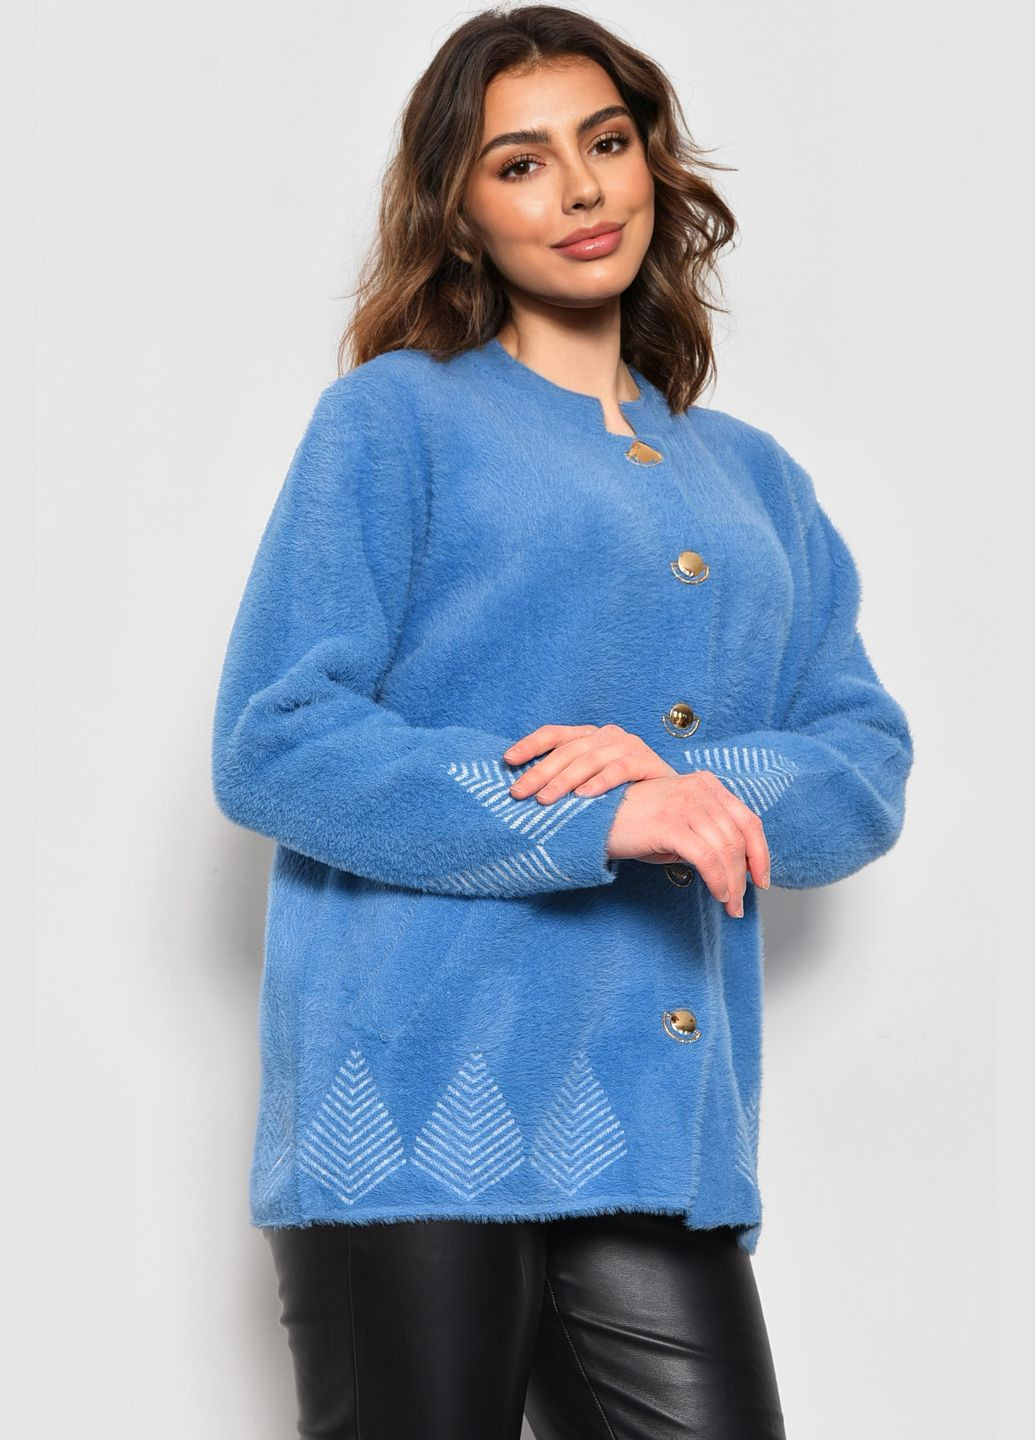 Голубой демисезонный кардиган женский альпака голубого цвета пуловер Let's Shop